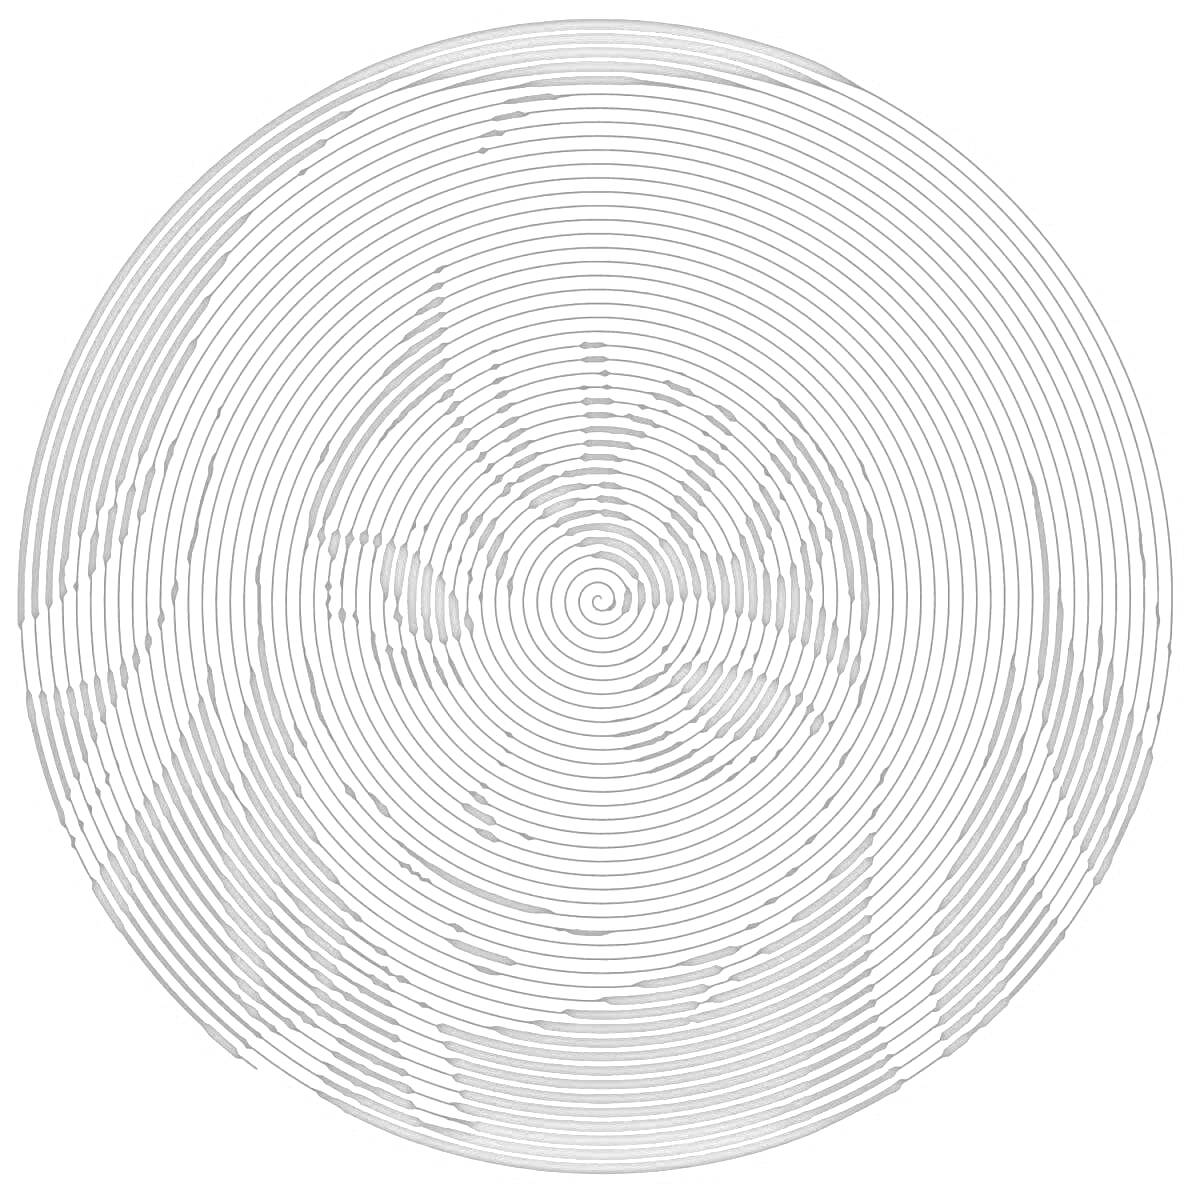 Раскраска Спиральная цветная раскраска с аниме персонажем внутри спирали